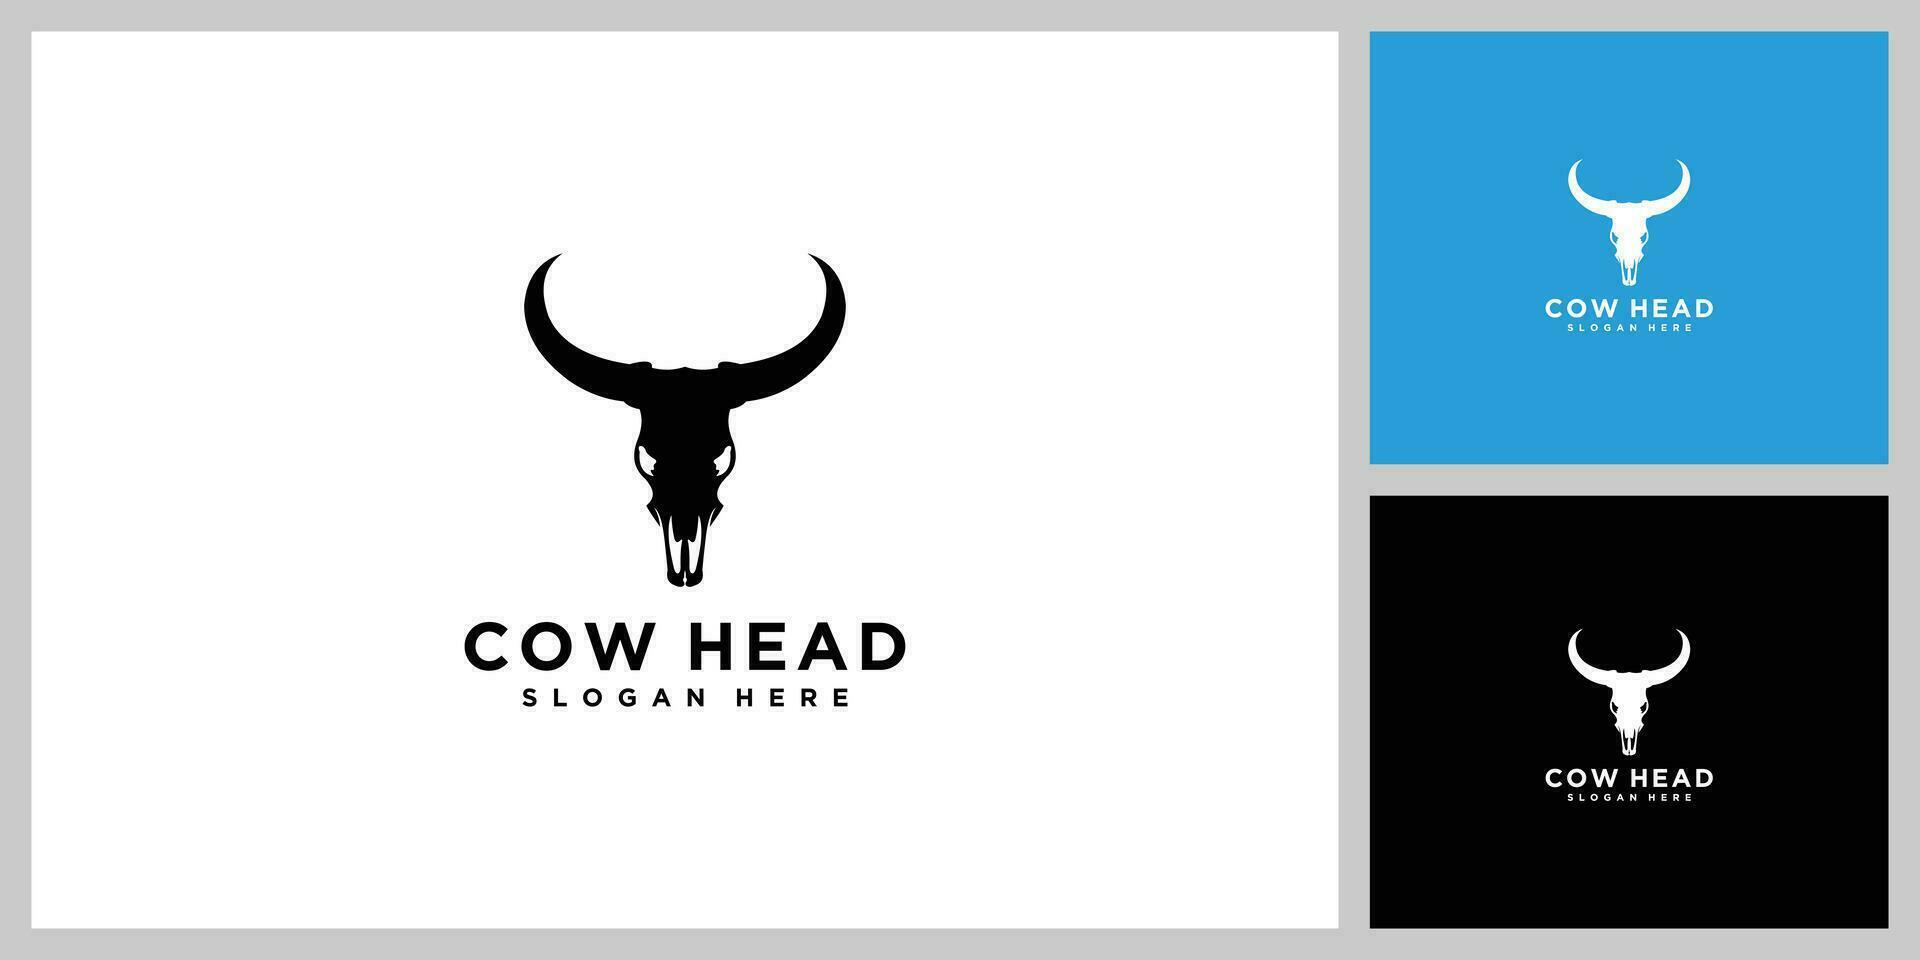 Cow head skull logo design rustic illustration horn vintage farm livestock icon symbol vector